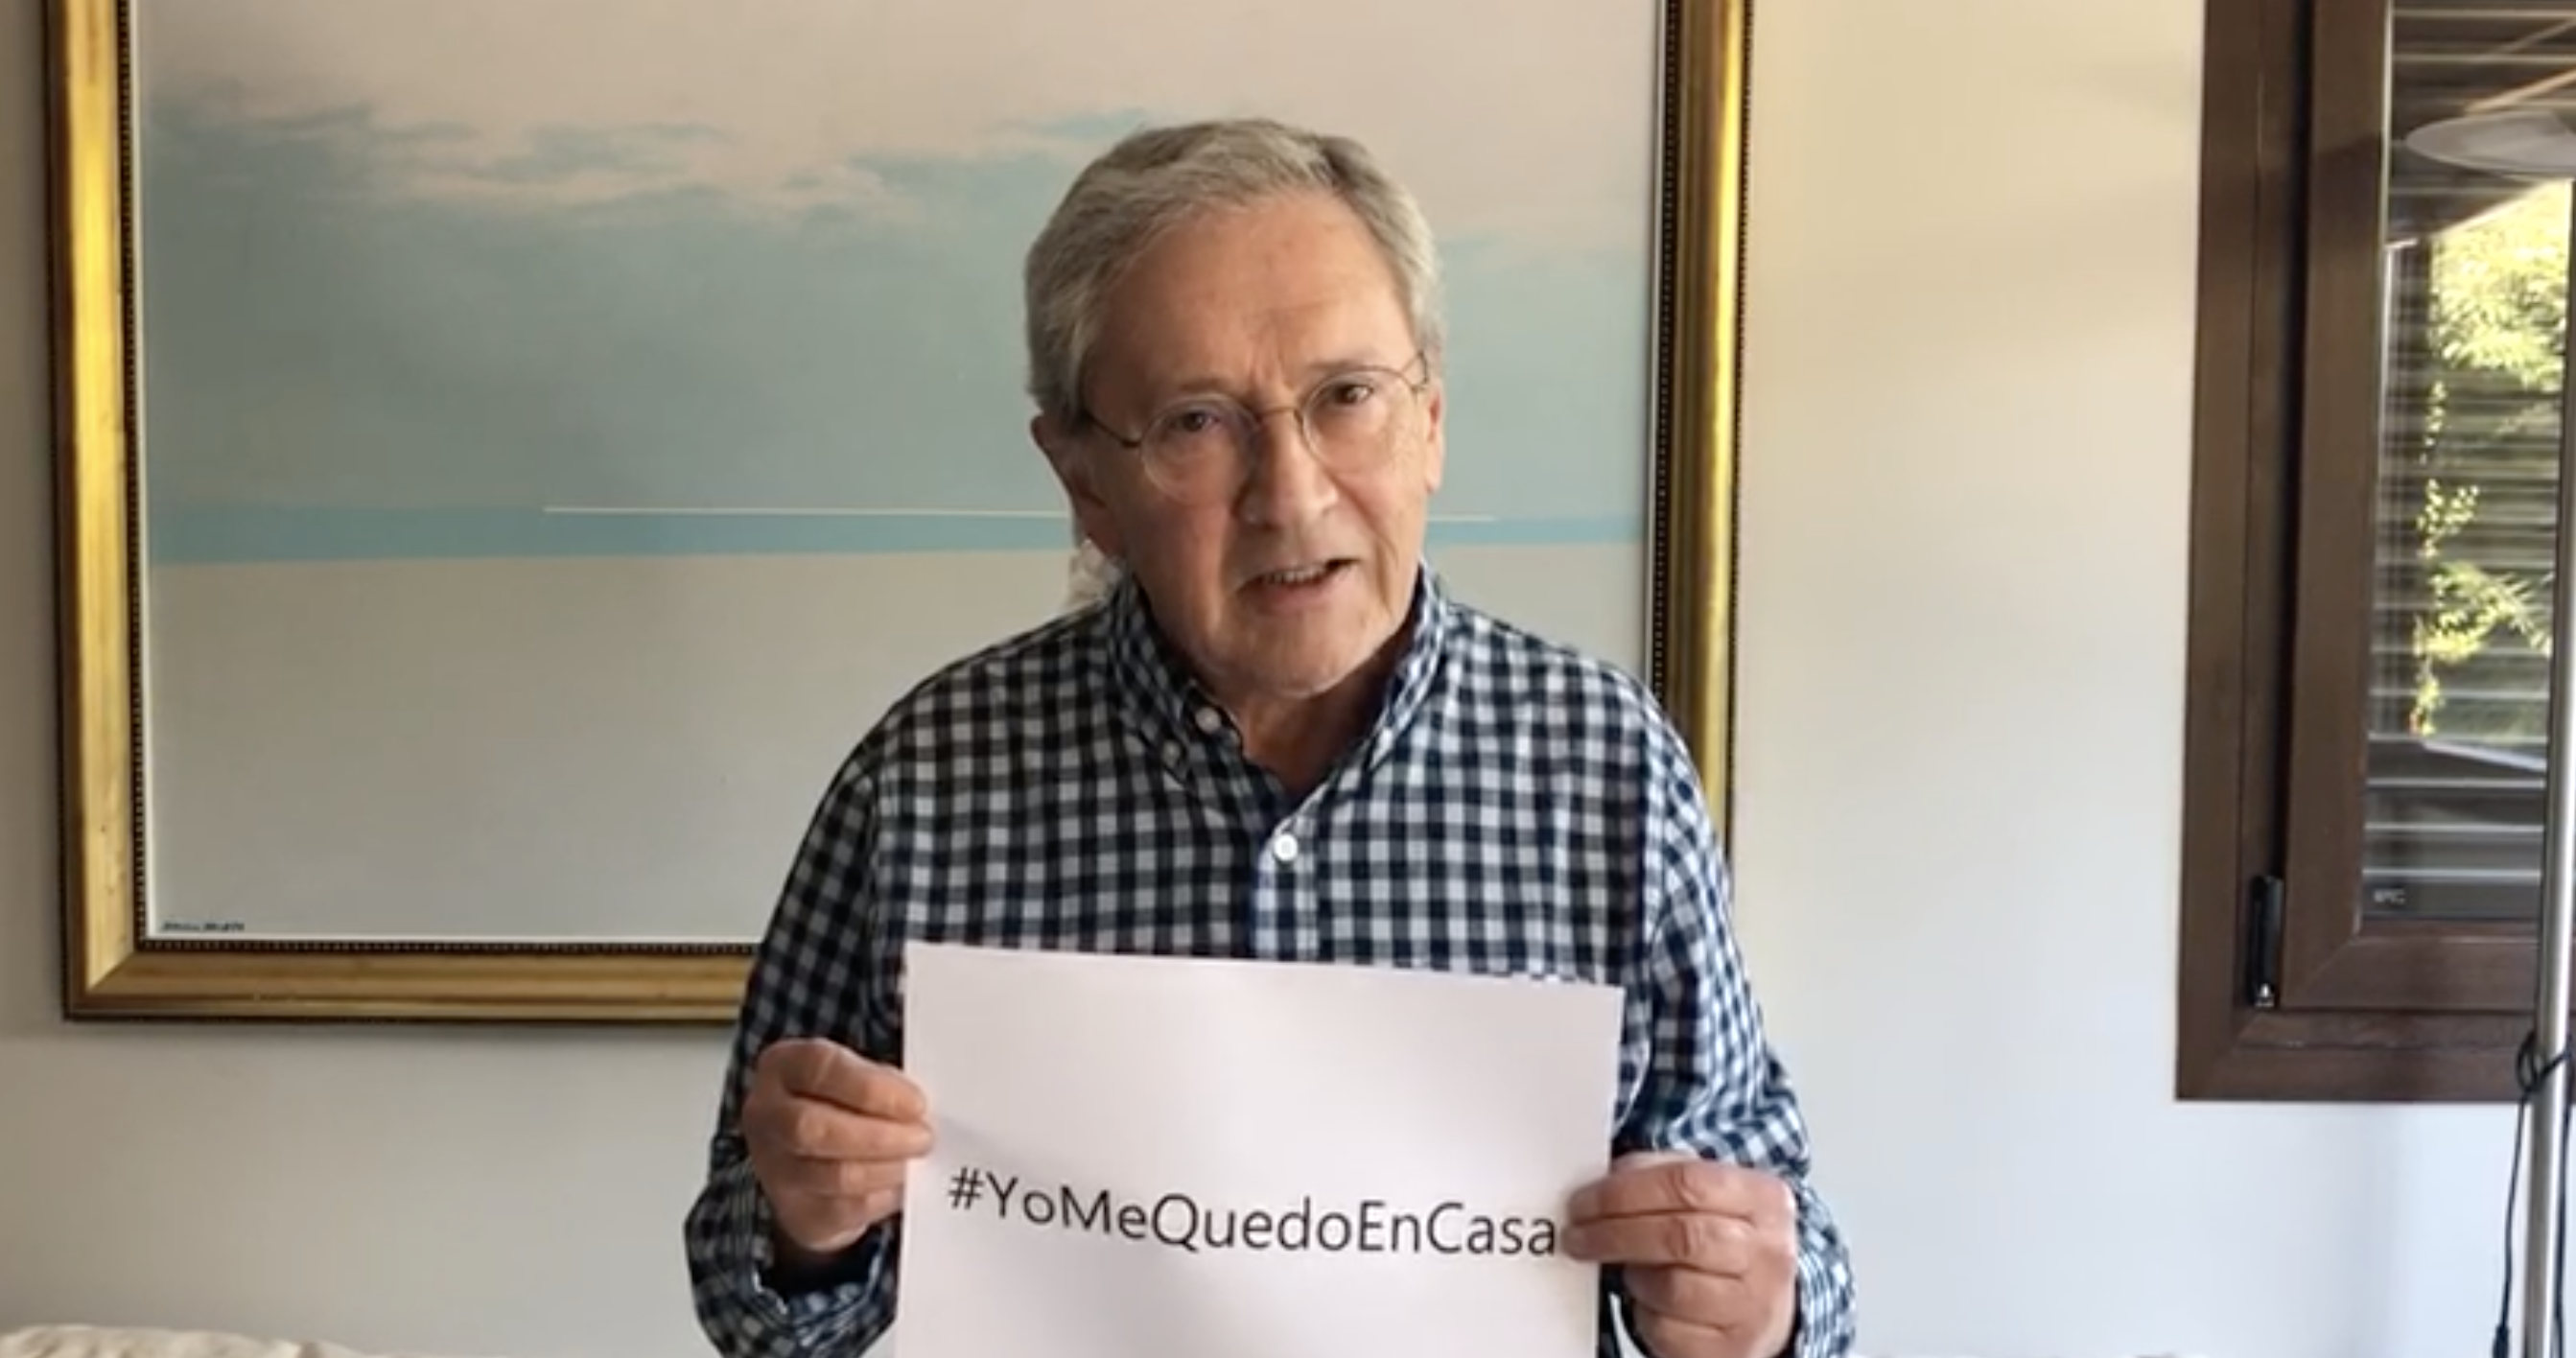 Fernando Ónega - #YoMeQuedoEnCasa: La campaña para frenar el coronavirus